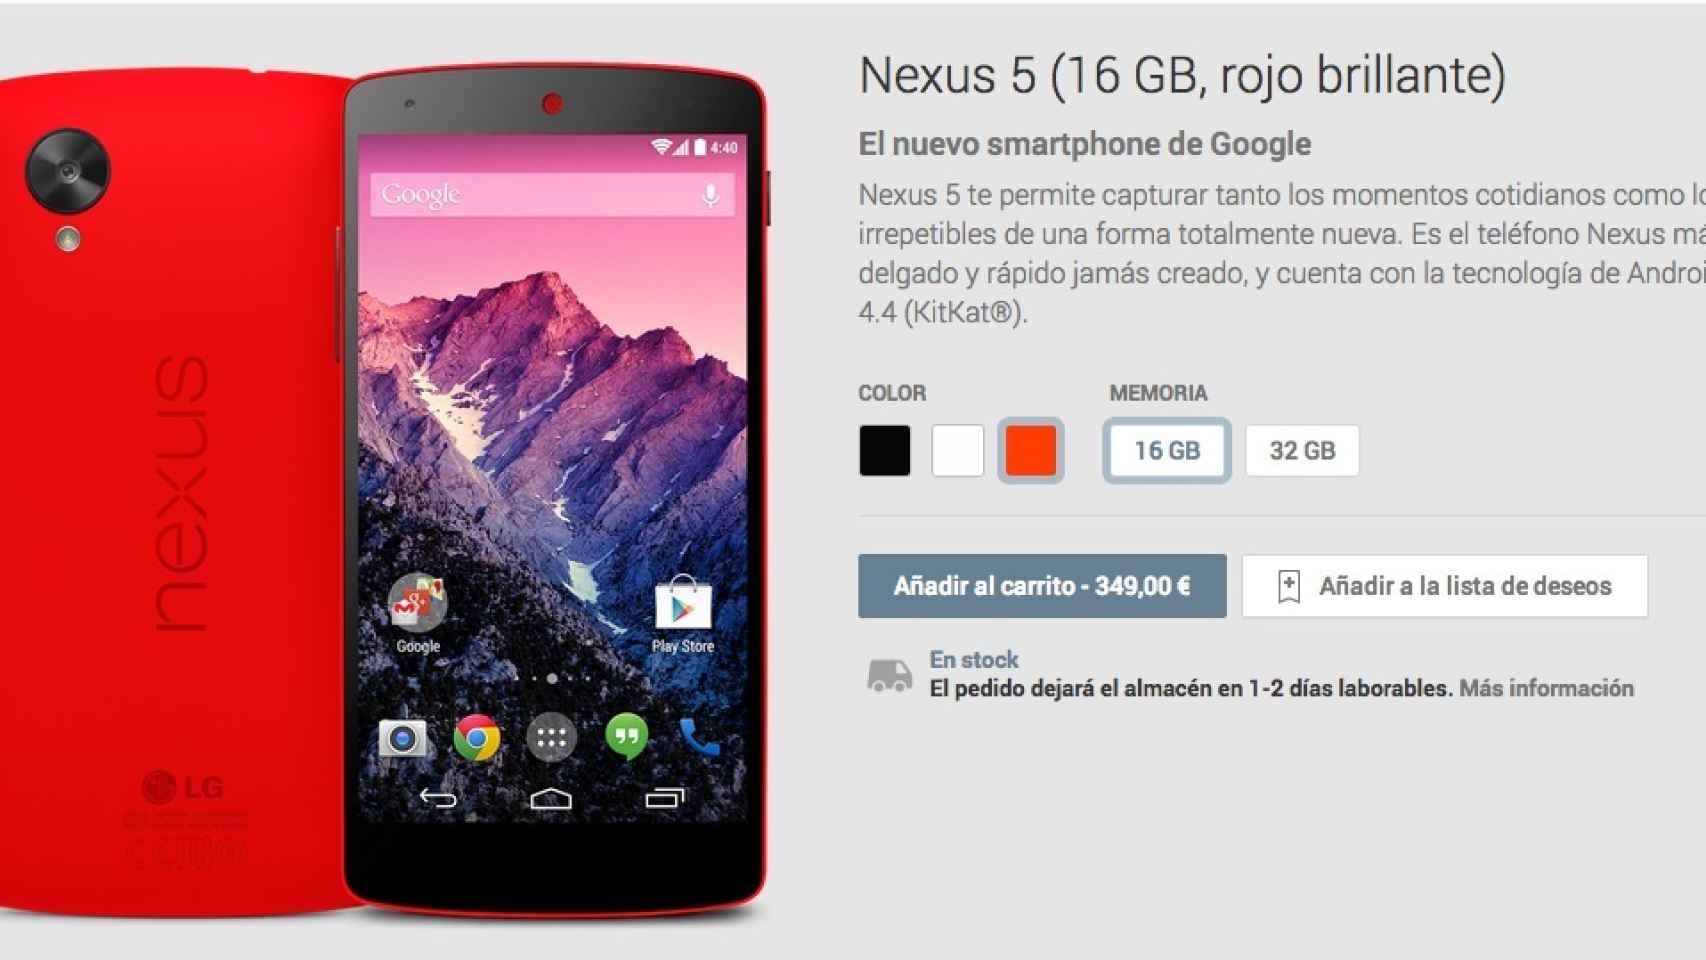 Nexus 5 ya disponible en color rojo brillante